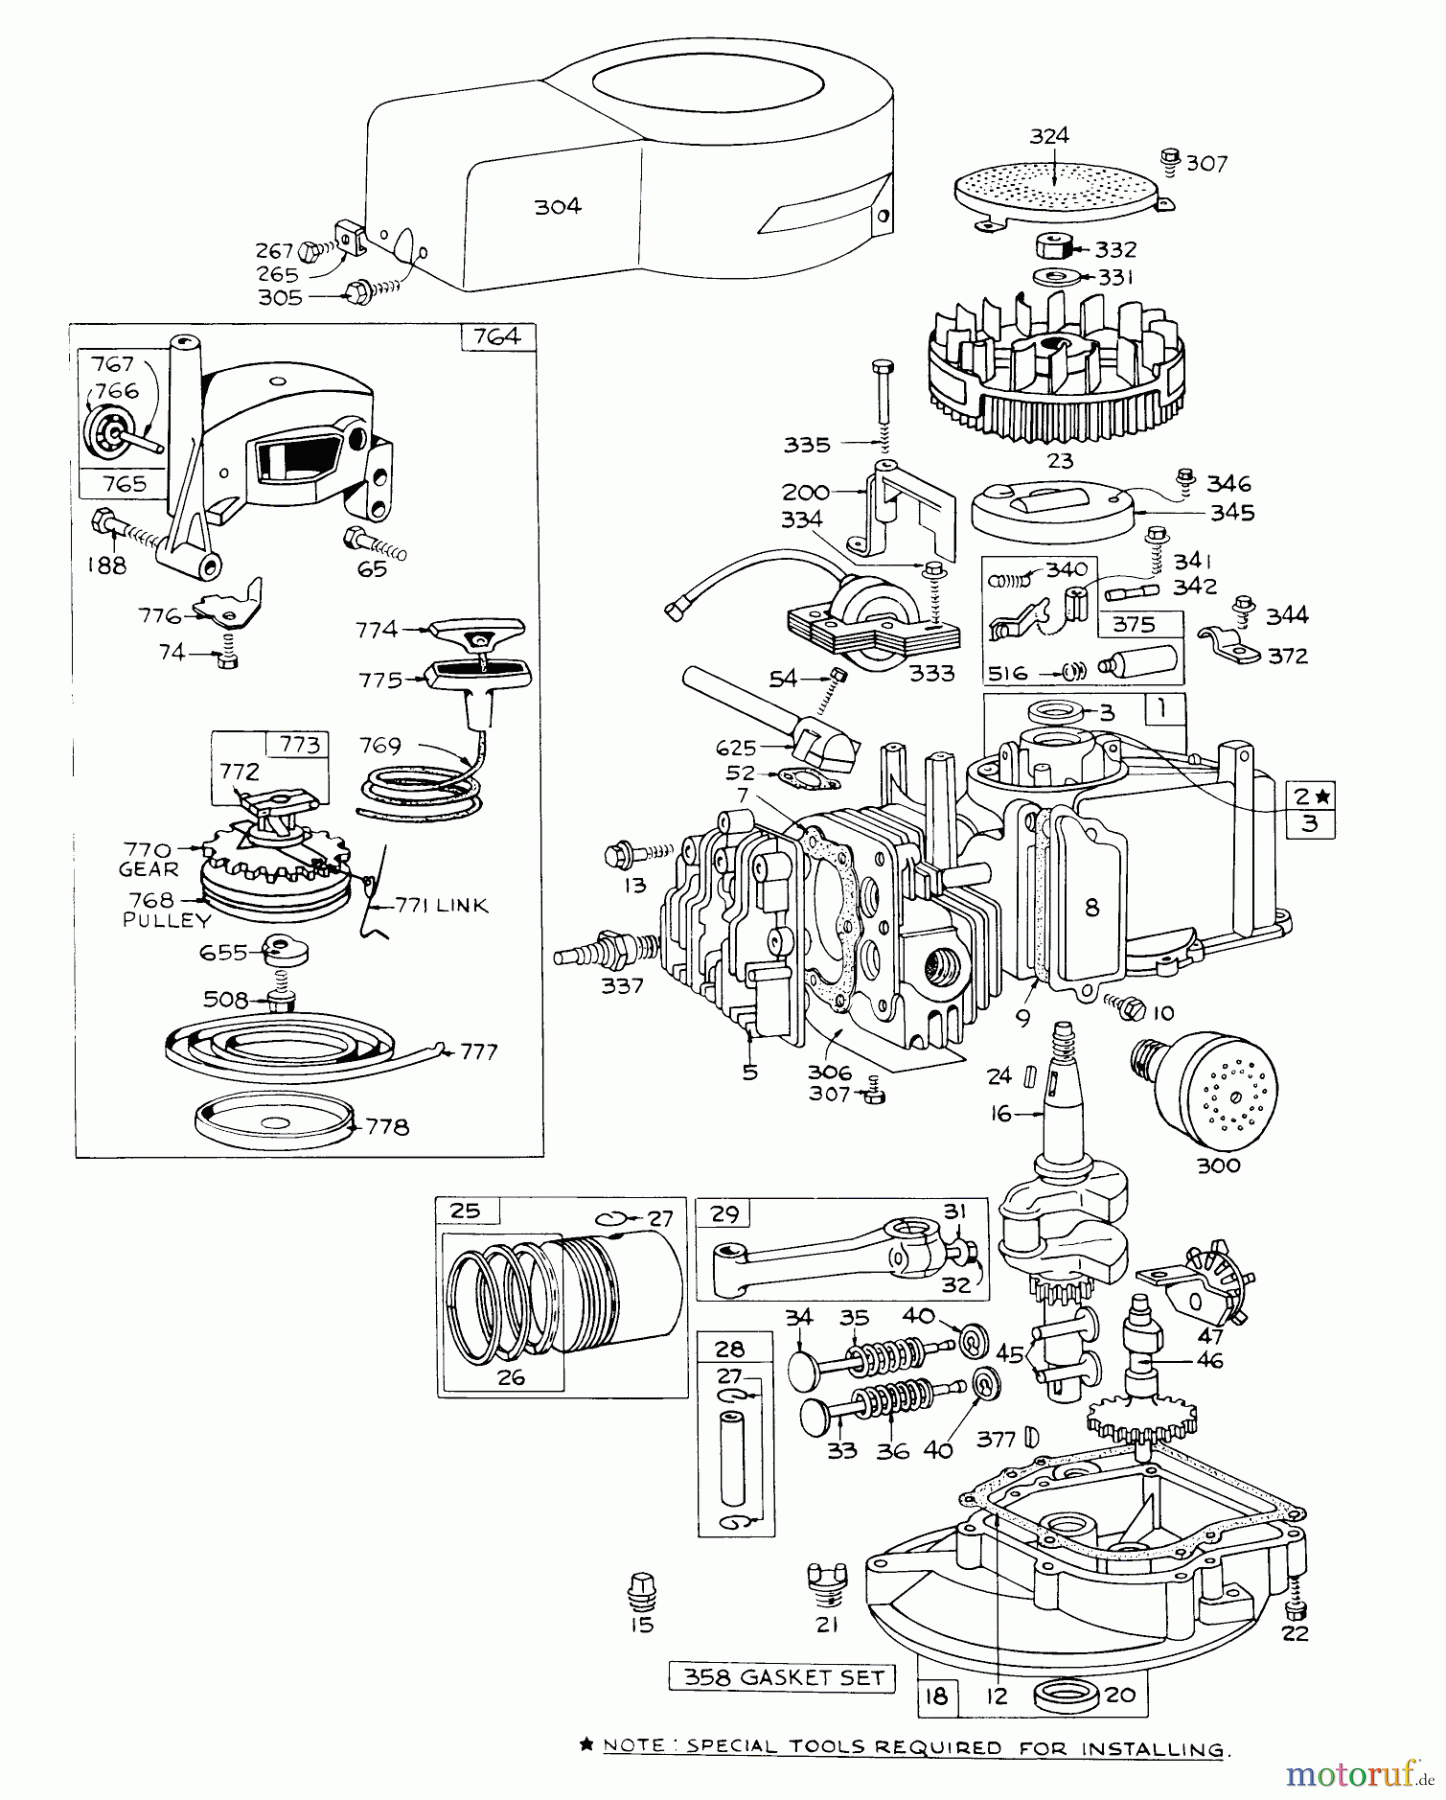  Toro Neu Mowers, Walk-Behind Seite 1 16111 - Toro Lawnmower, 1971 (1000001-1999999) ENGINE MODEL NO. 92508-0818 FOR 19